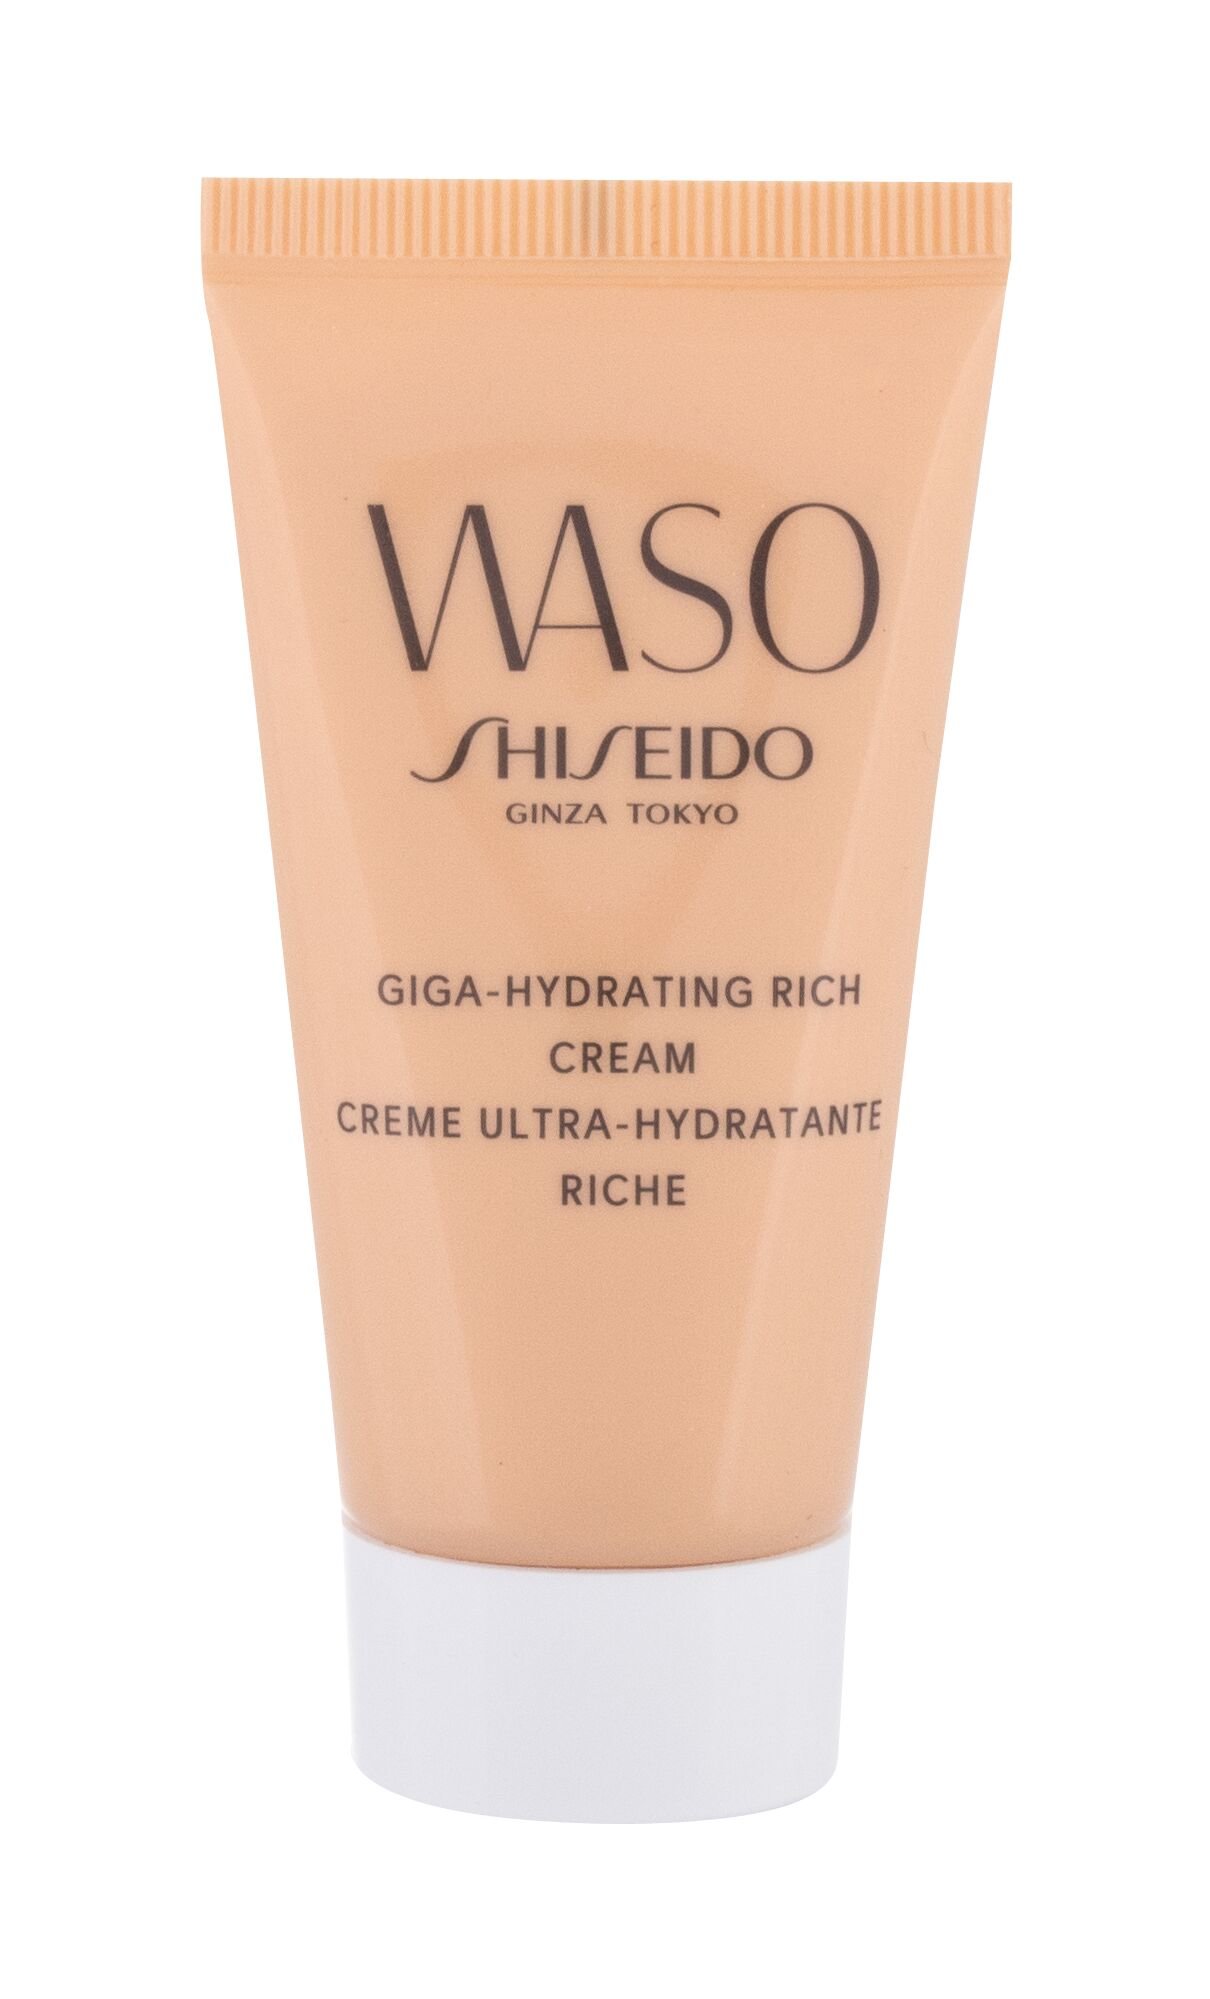 Крем shiseido waso. Waso мега-увлажняющий крем. Shiseido Waso Giga-Hydrating Rich Cream. Крем Shiseido Waso мега-увлажняющий. Крем шисейдо Васо для лица.